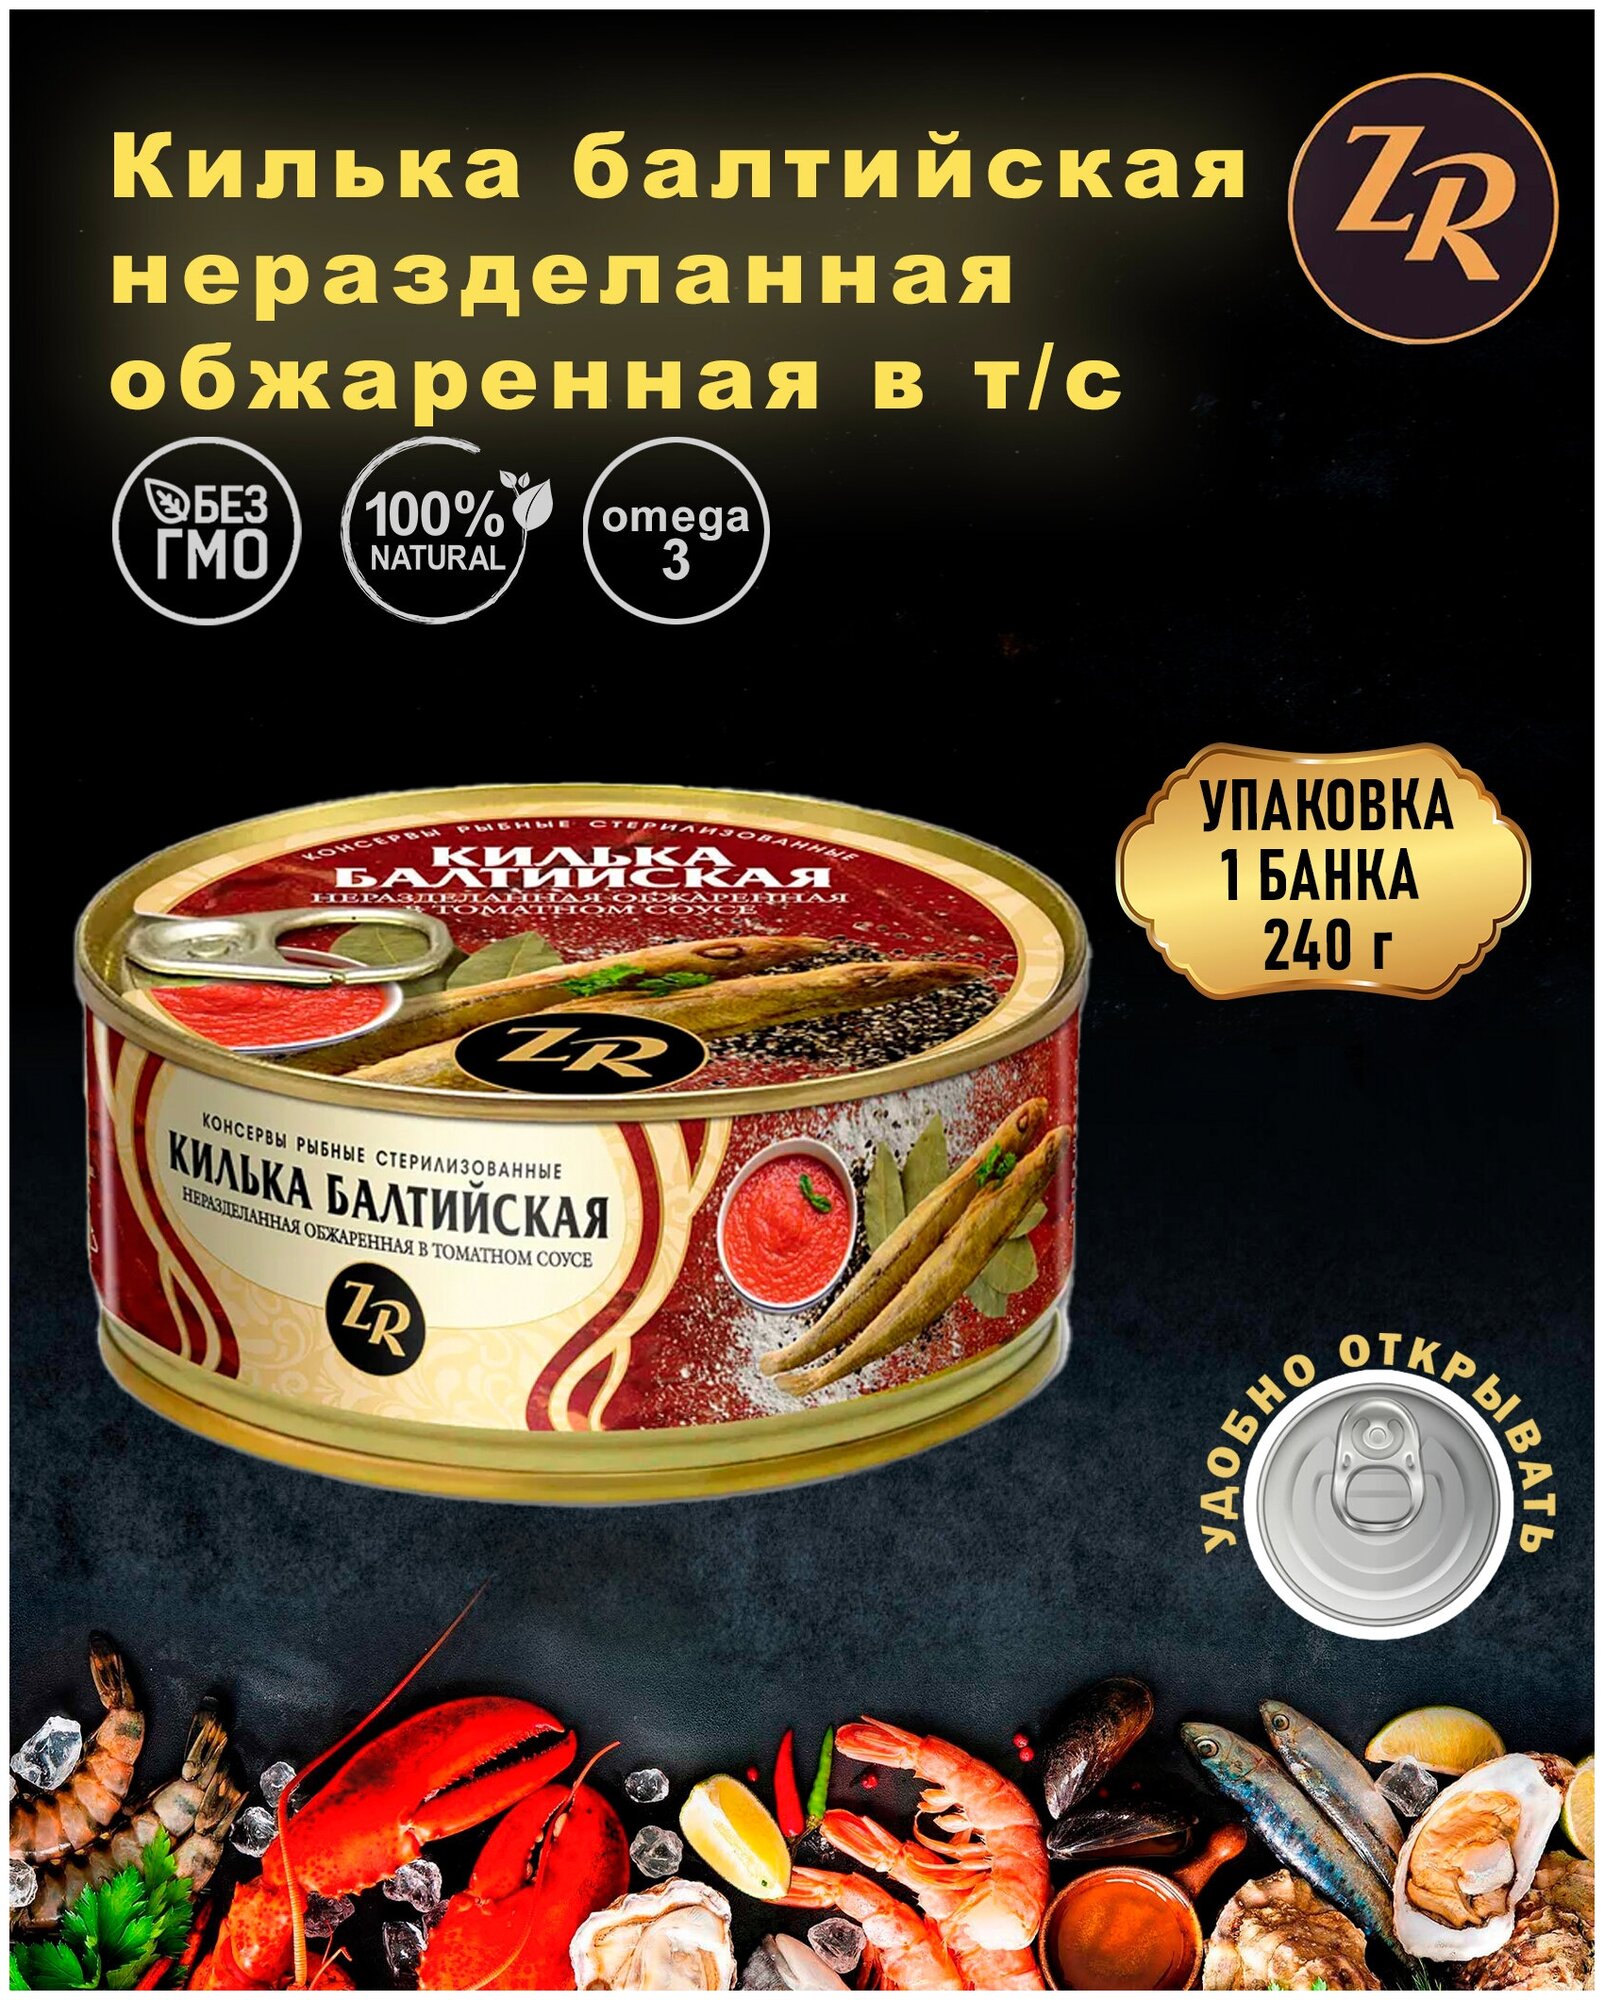 Килька балтийская обжаренная в томатном соусе, Золотистая рыбка, ГОСТ, 1 шт. по 240 г